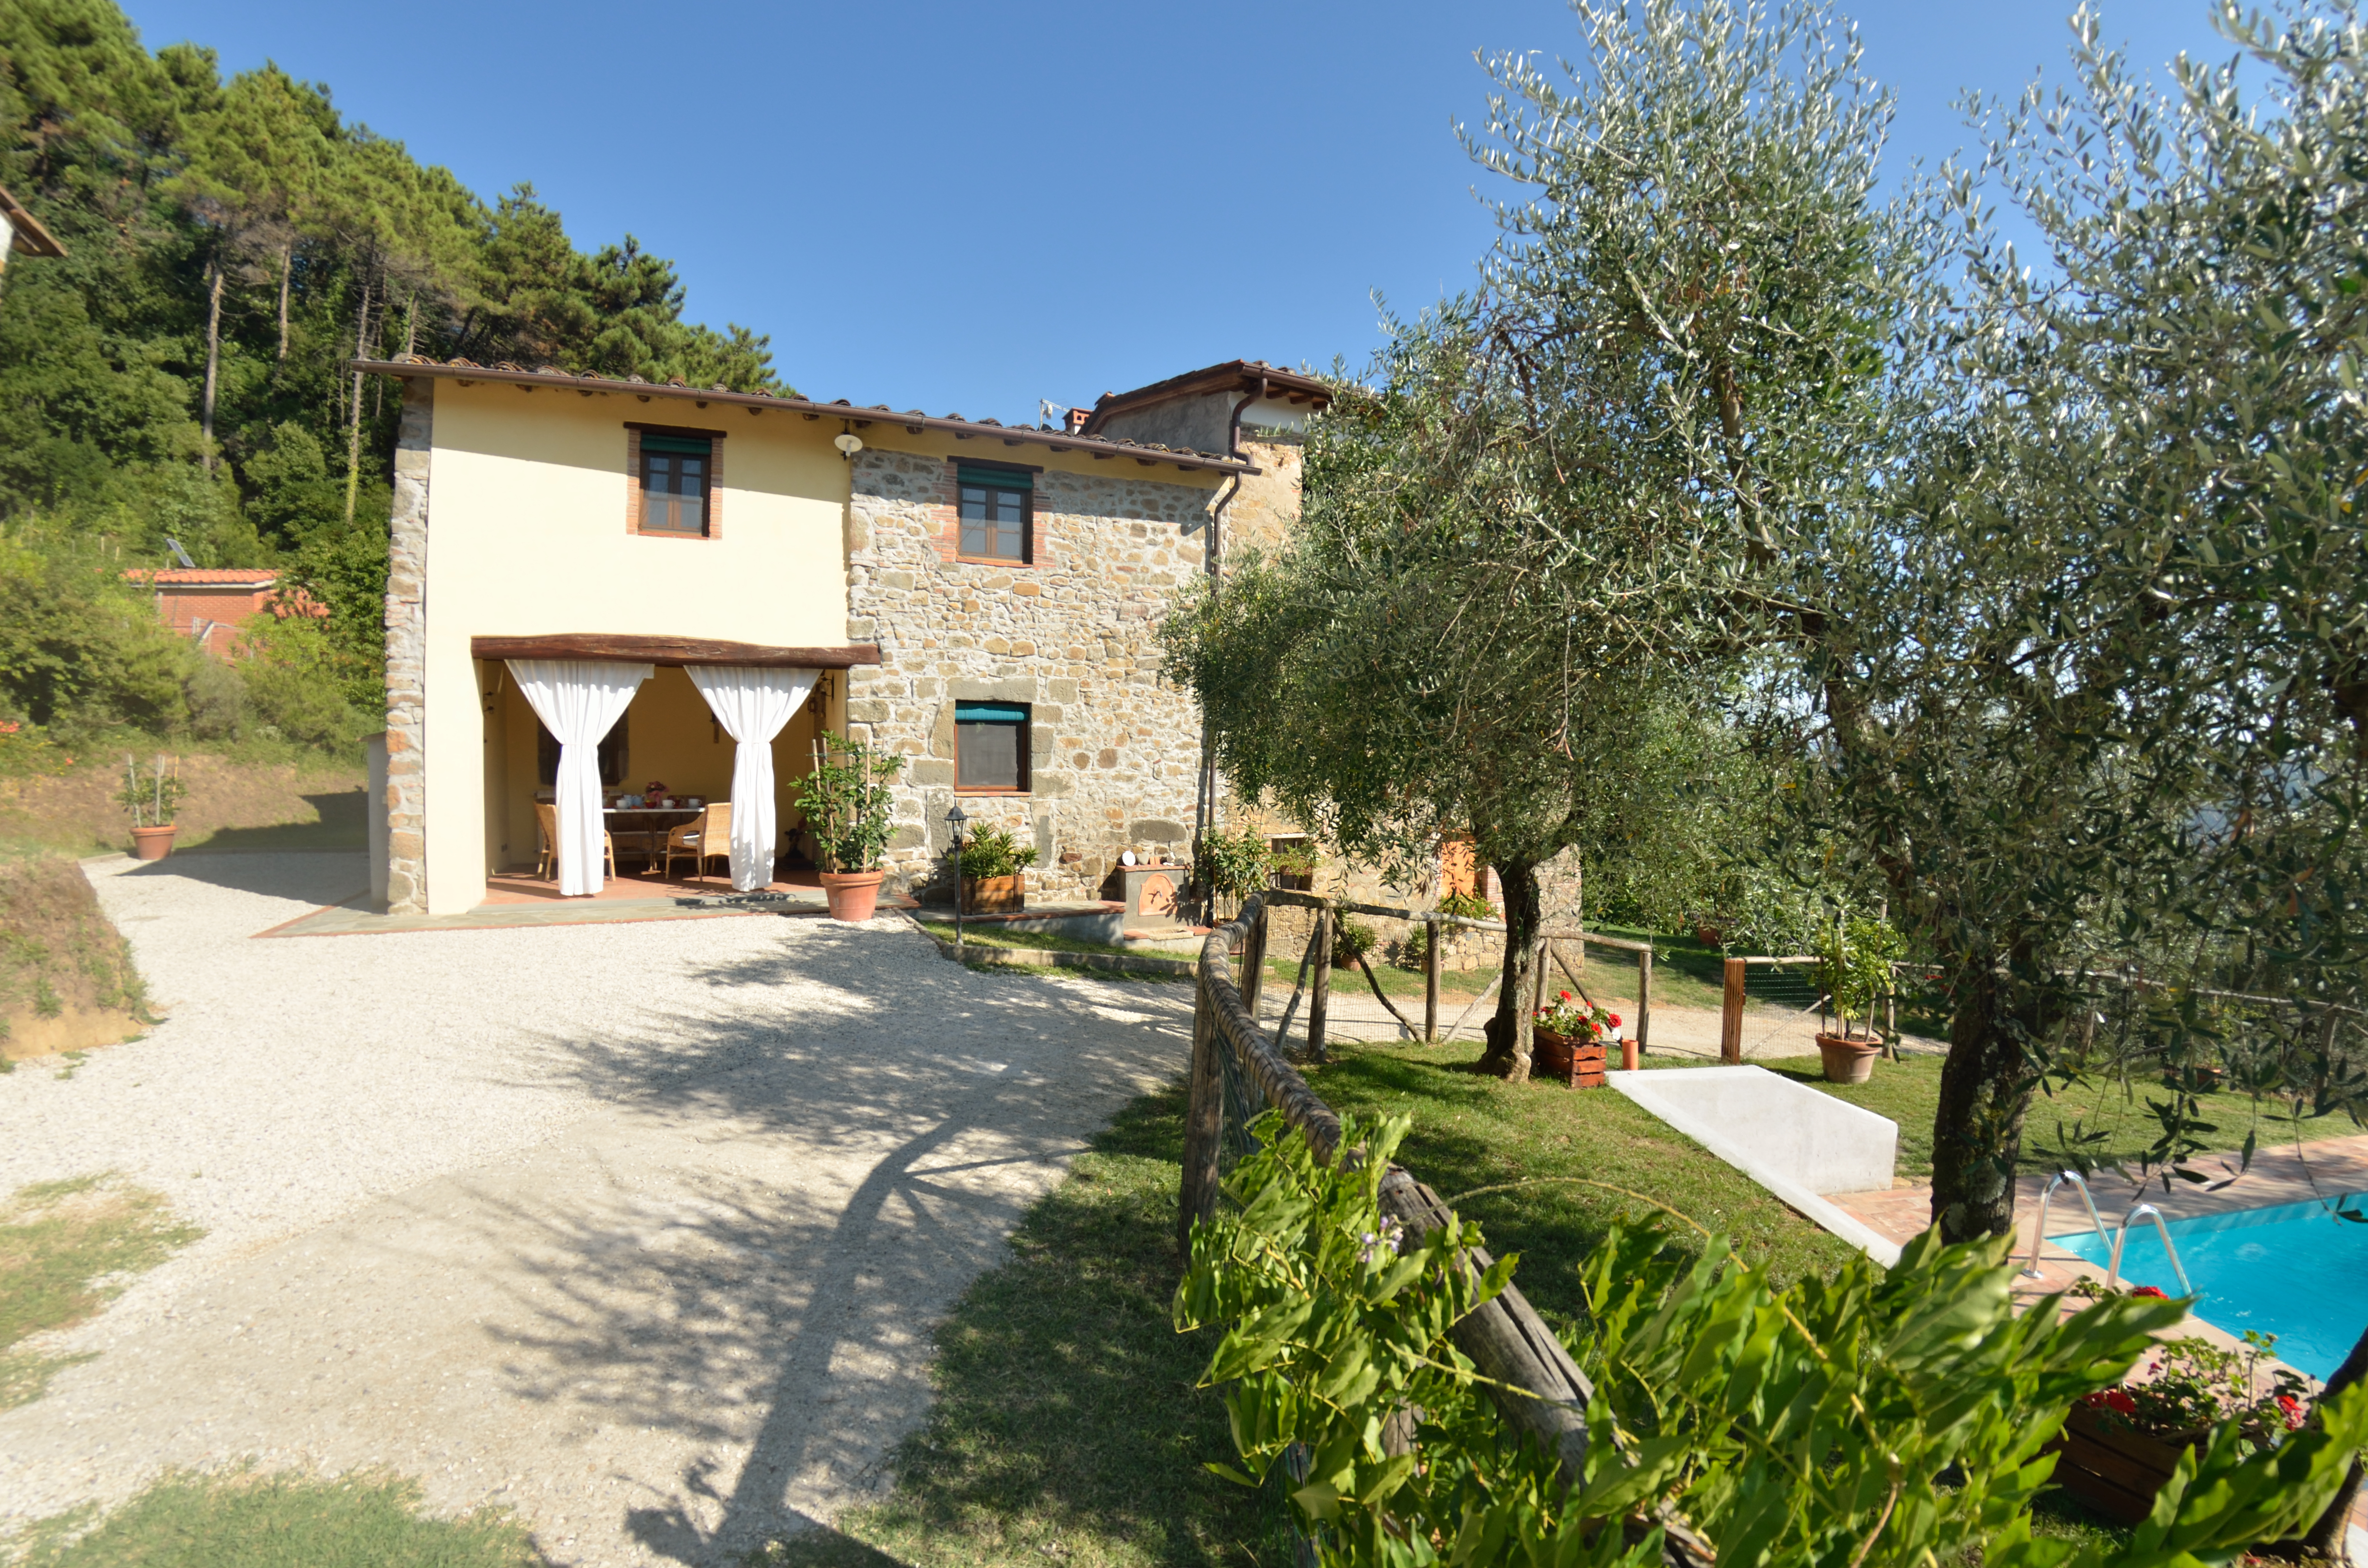 420_Casa Batticapo di Ilaria, Lucca, Toscaanse kust, Pisa, kleinschalig, vakantiehuis met privÃ©zwemad (21)